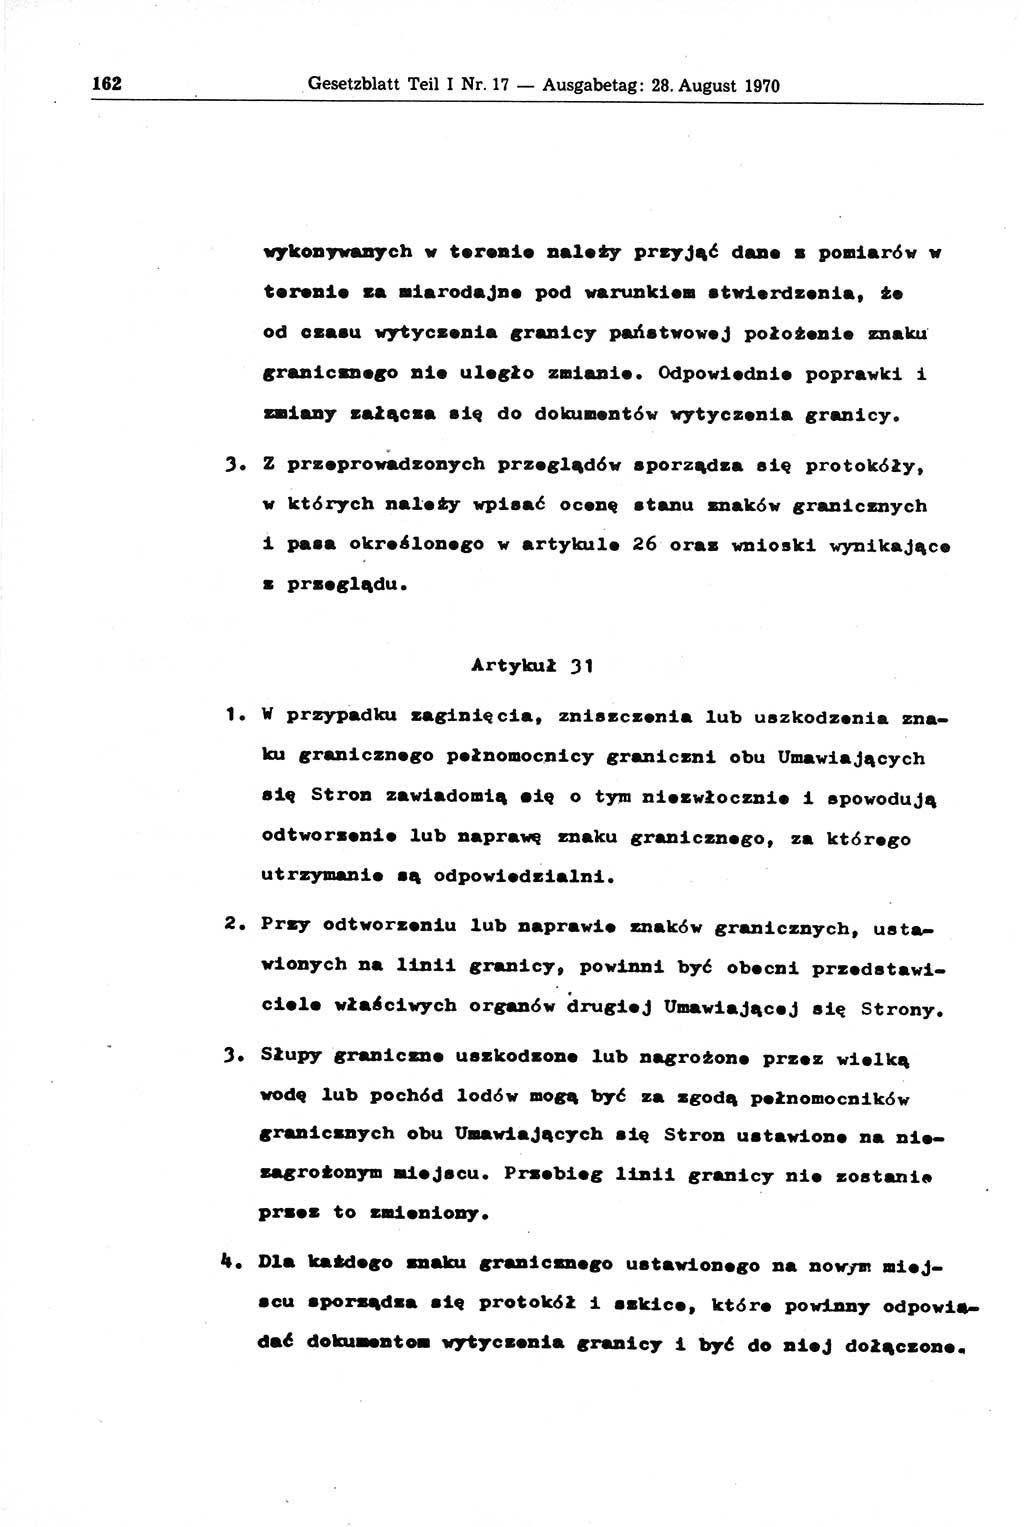 Gesetzblatt (GBl.) der Deutschen Demokratischen Republik (DDR) Teil Ⅰ 1970, Seite 162 (GBl. DDR Ⅰ 1970, S. 162)